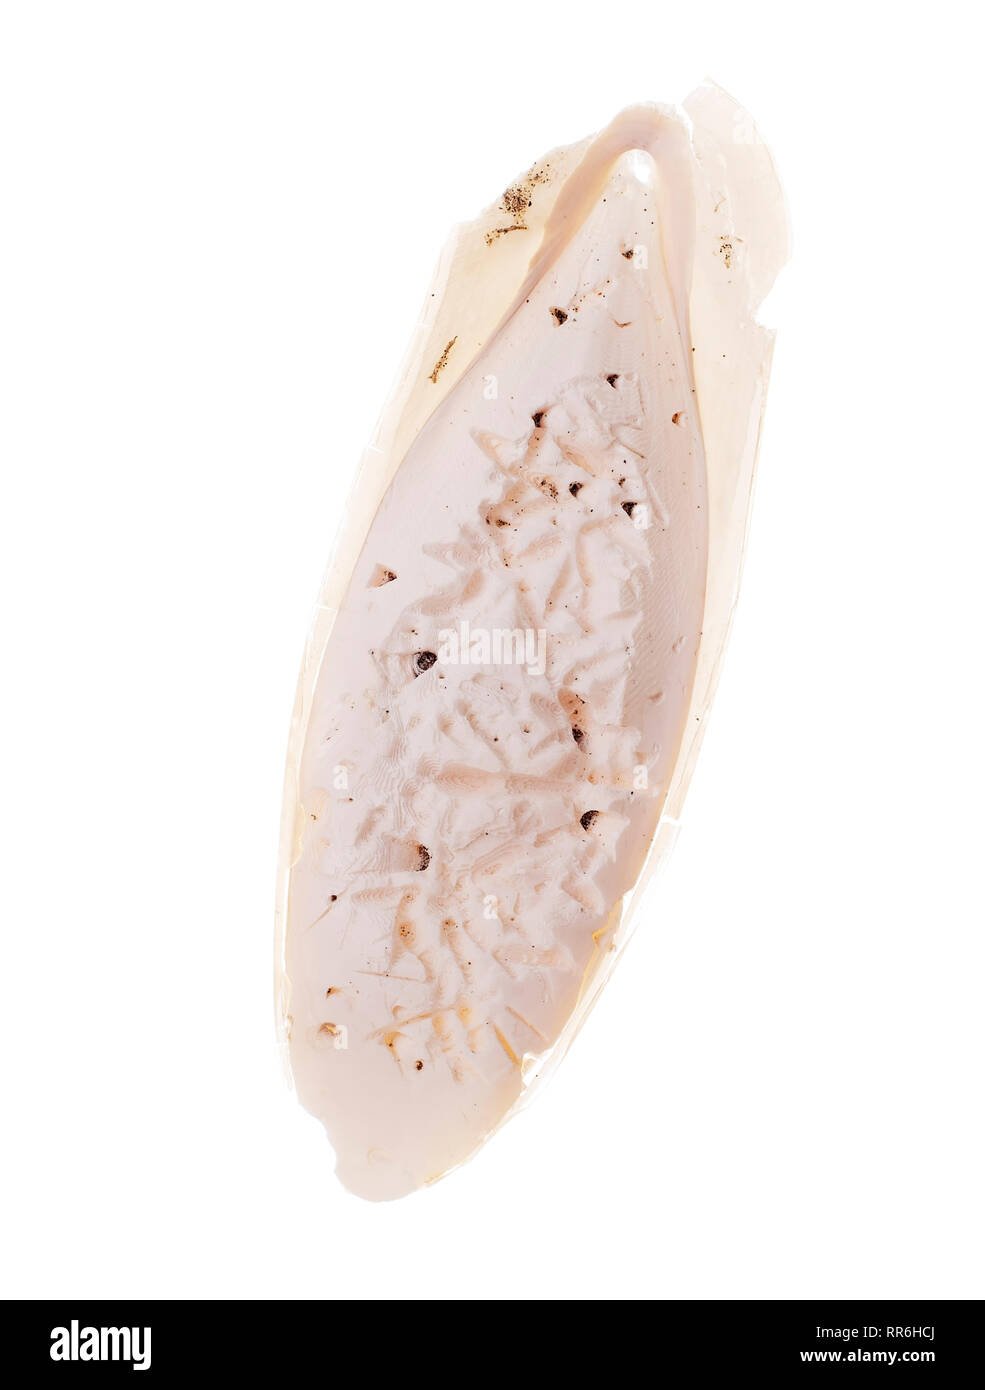 Gefunden, natürliche Tintenfisch Knochen aka cuttlebone, die innere Schale von Kopffüßern. Auf weissem Hintergrund. Bereits pickten durch Wildvögel. Stockfoto